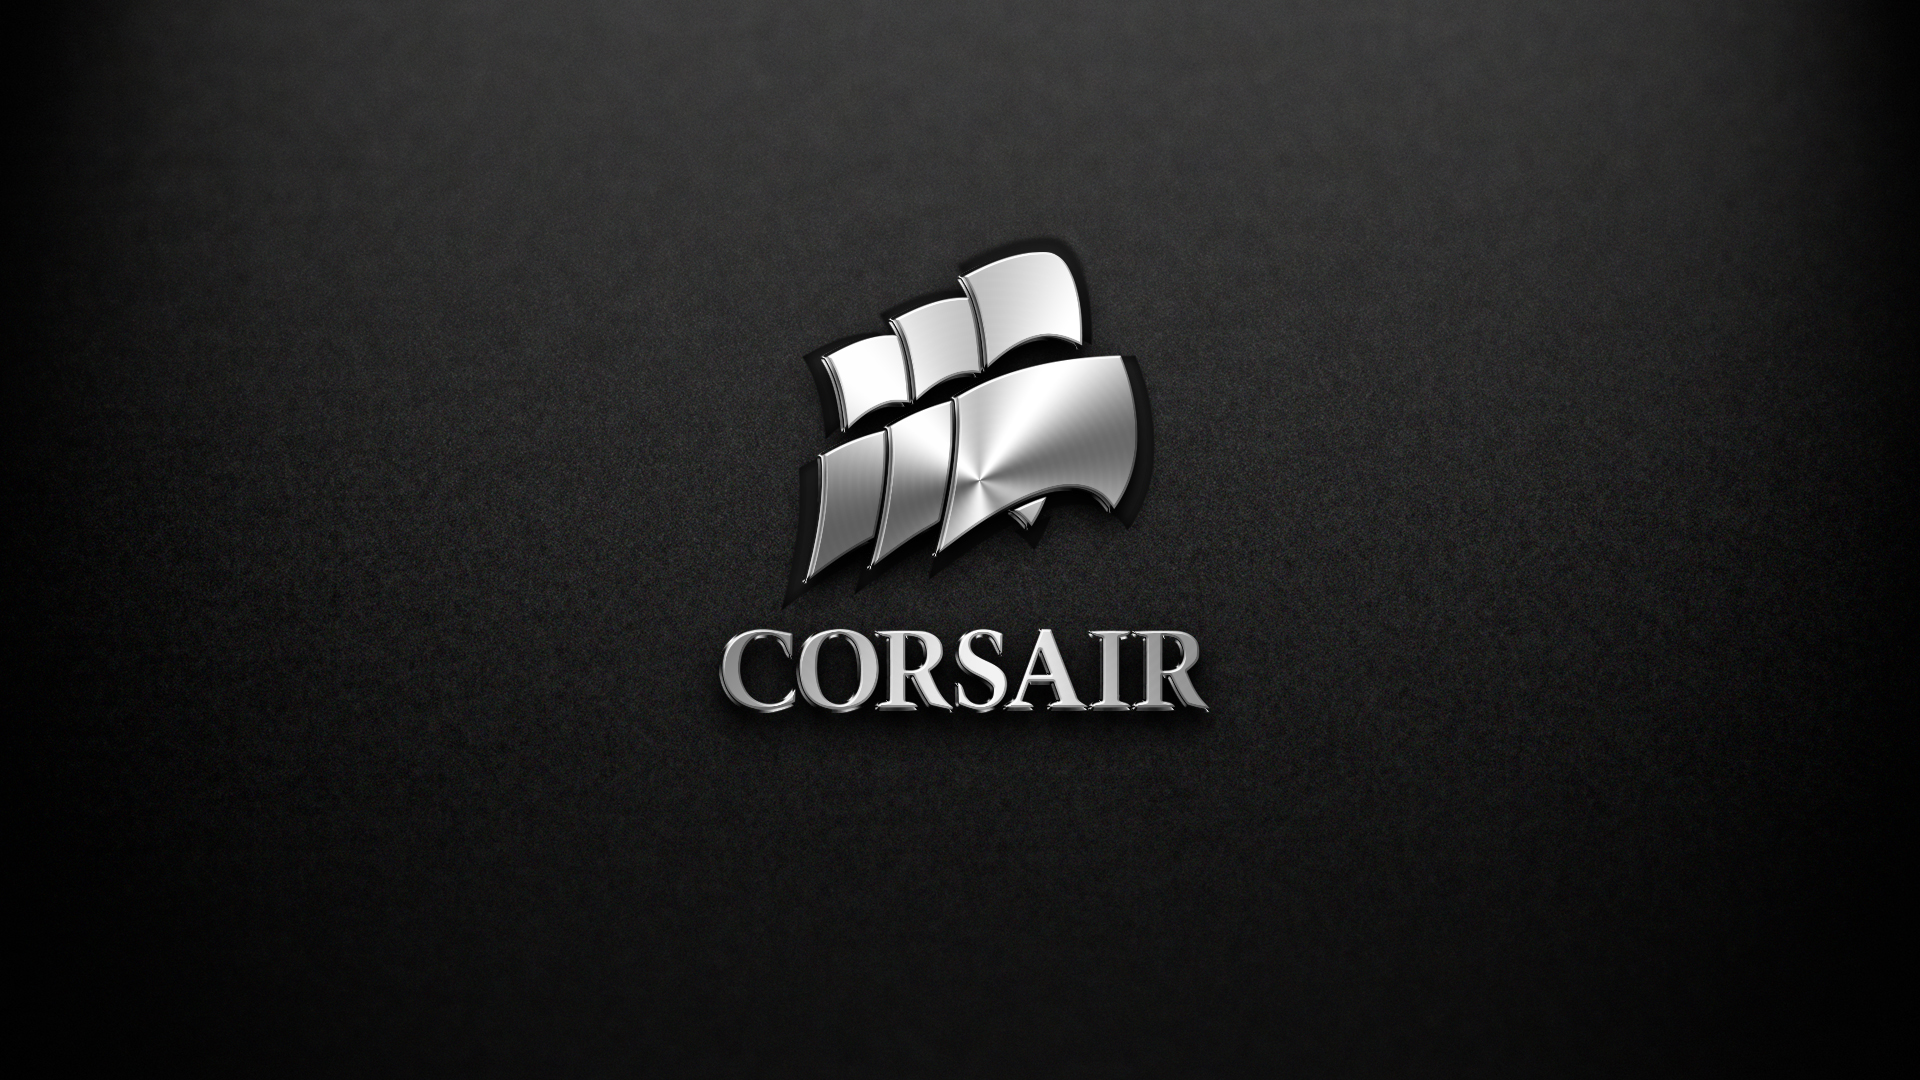 Corsair symbol